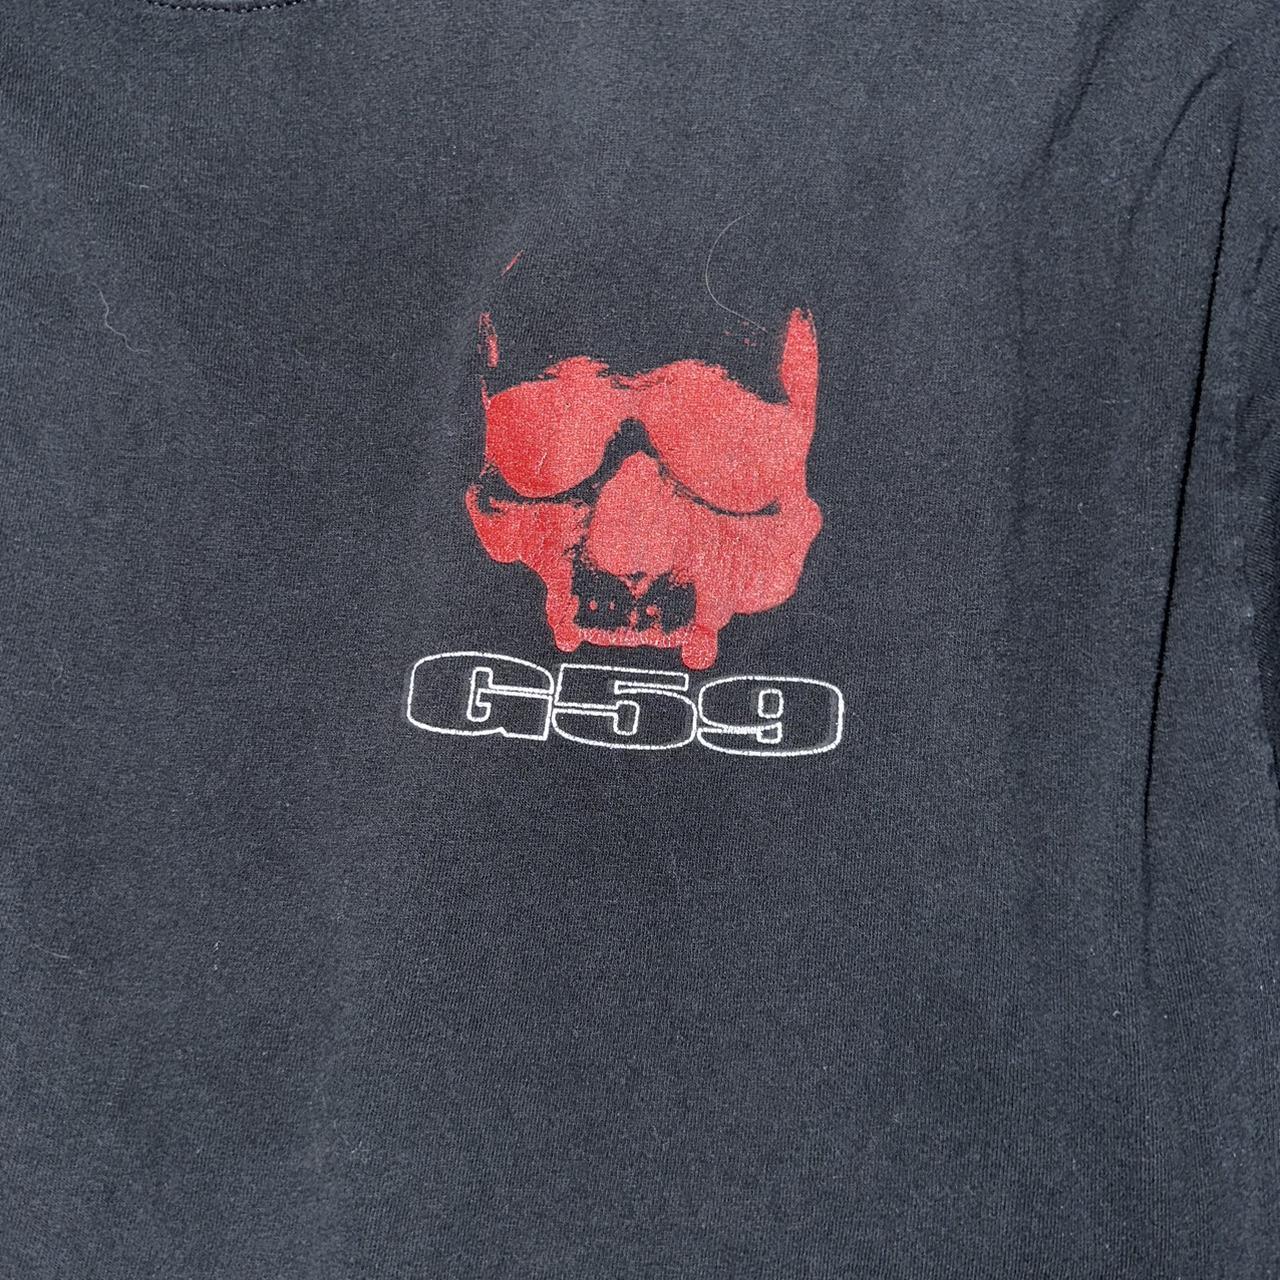 Red g59 skull shirt Dm me before buying #g59 #ftp... - Depop